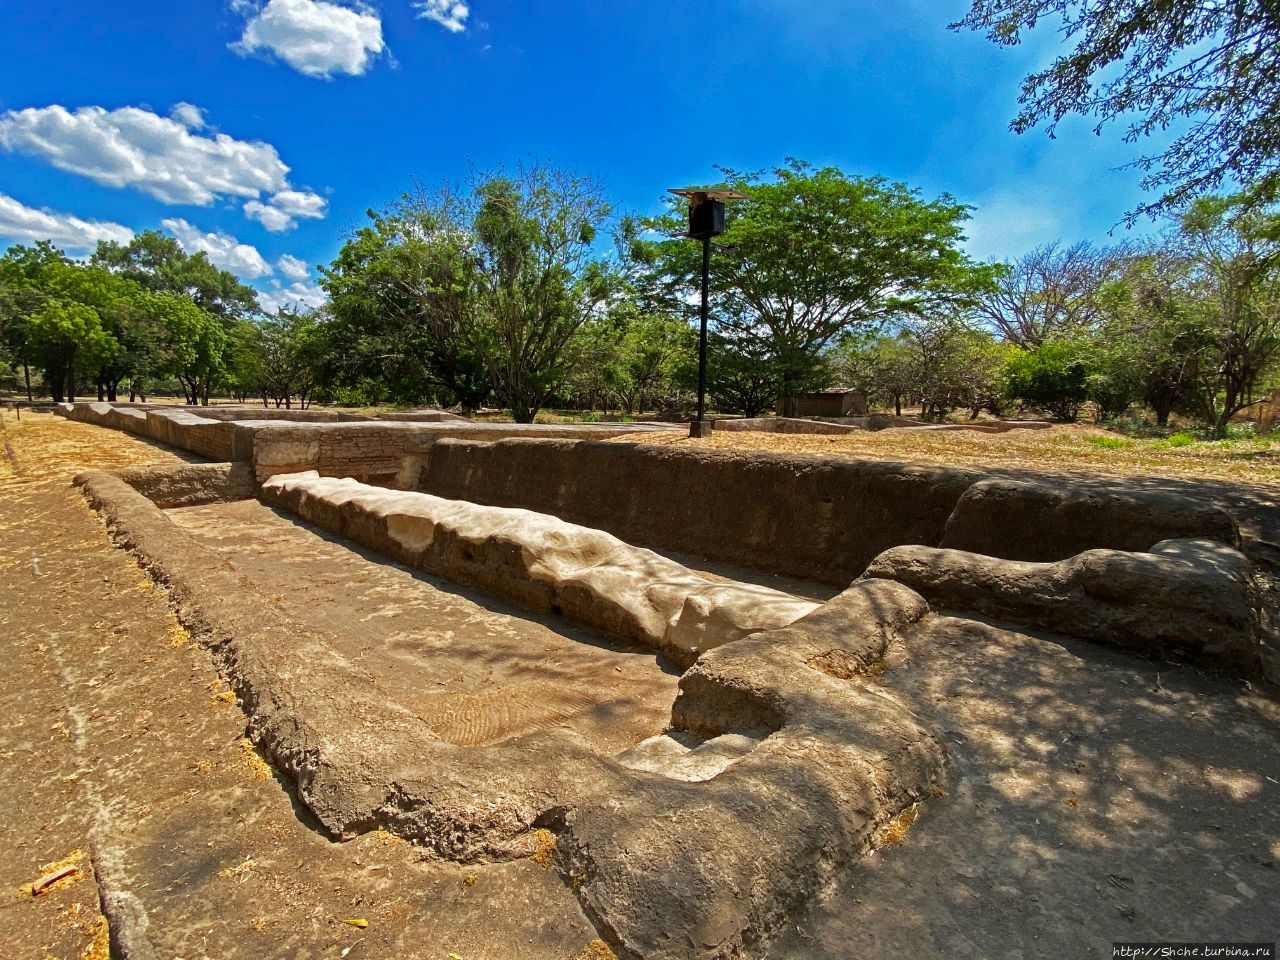 Руины города Леон-Вьехо (Старый Леон), объект ЮНЕСКО №613